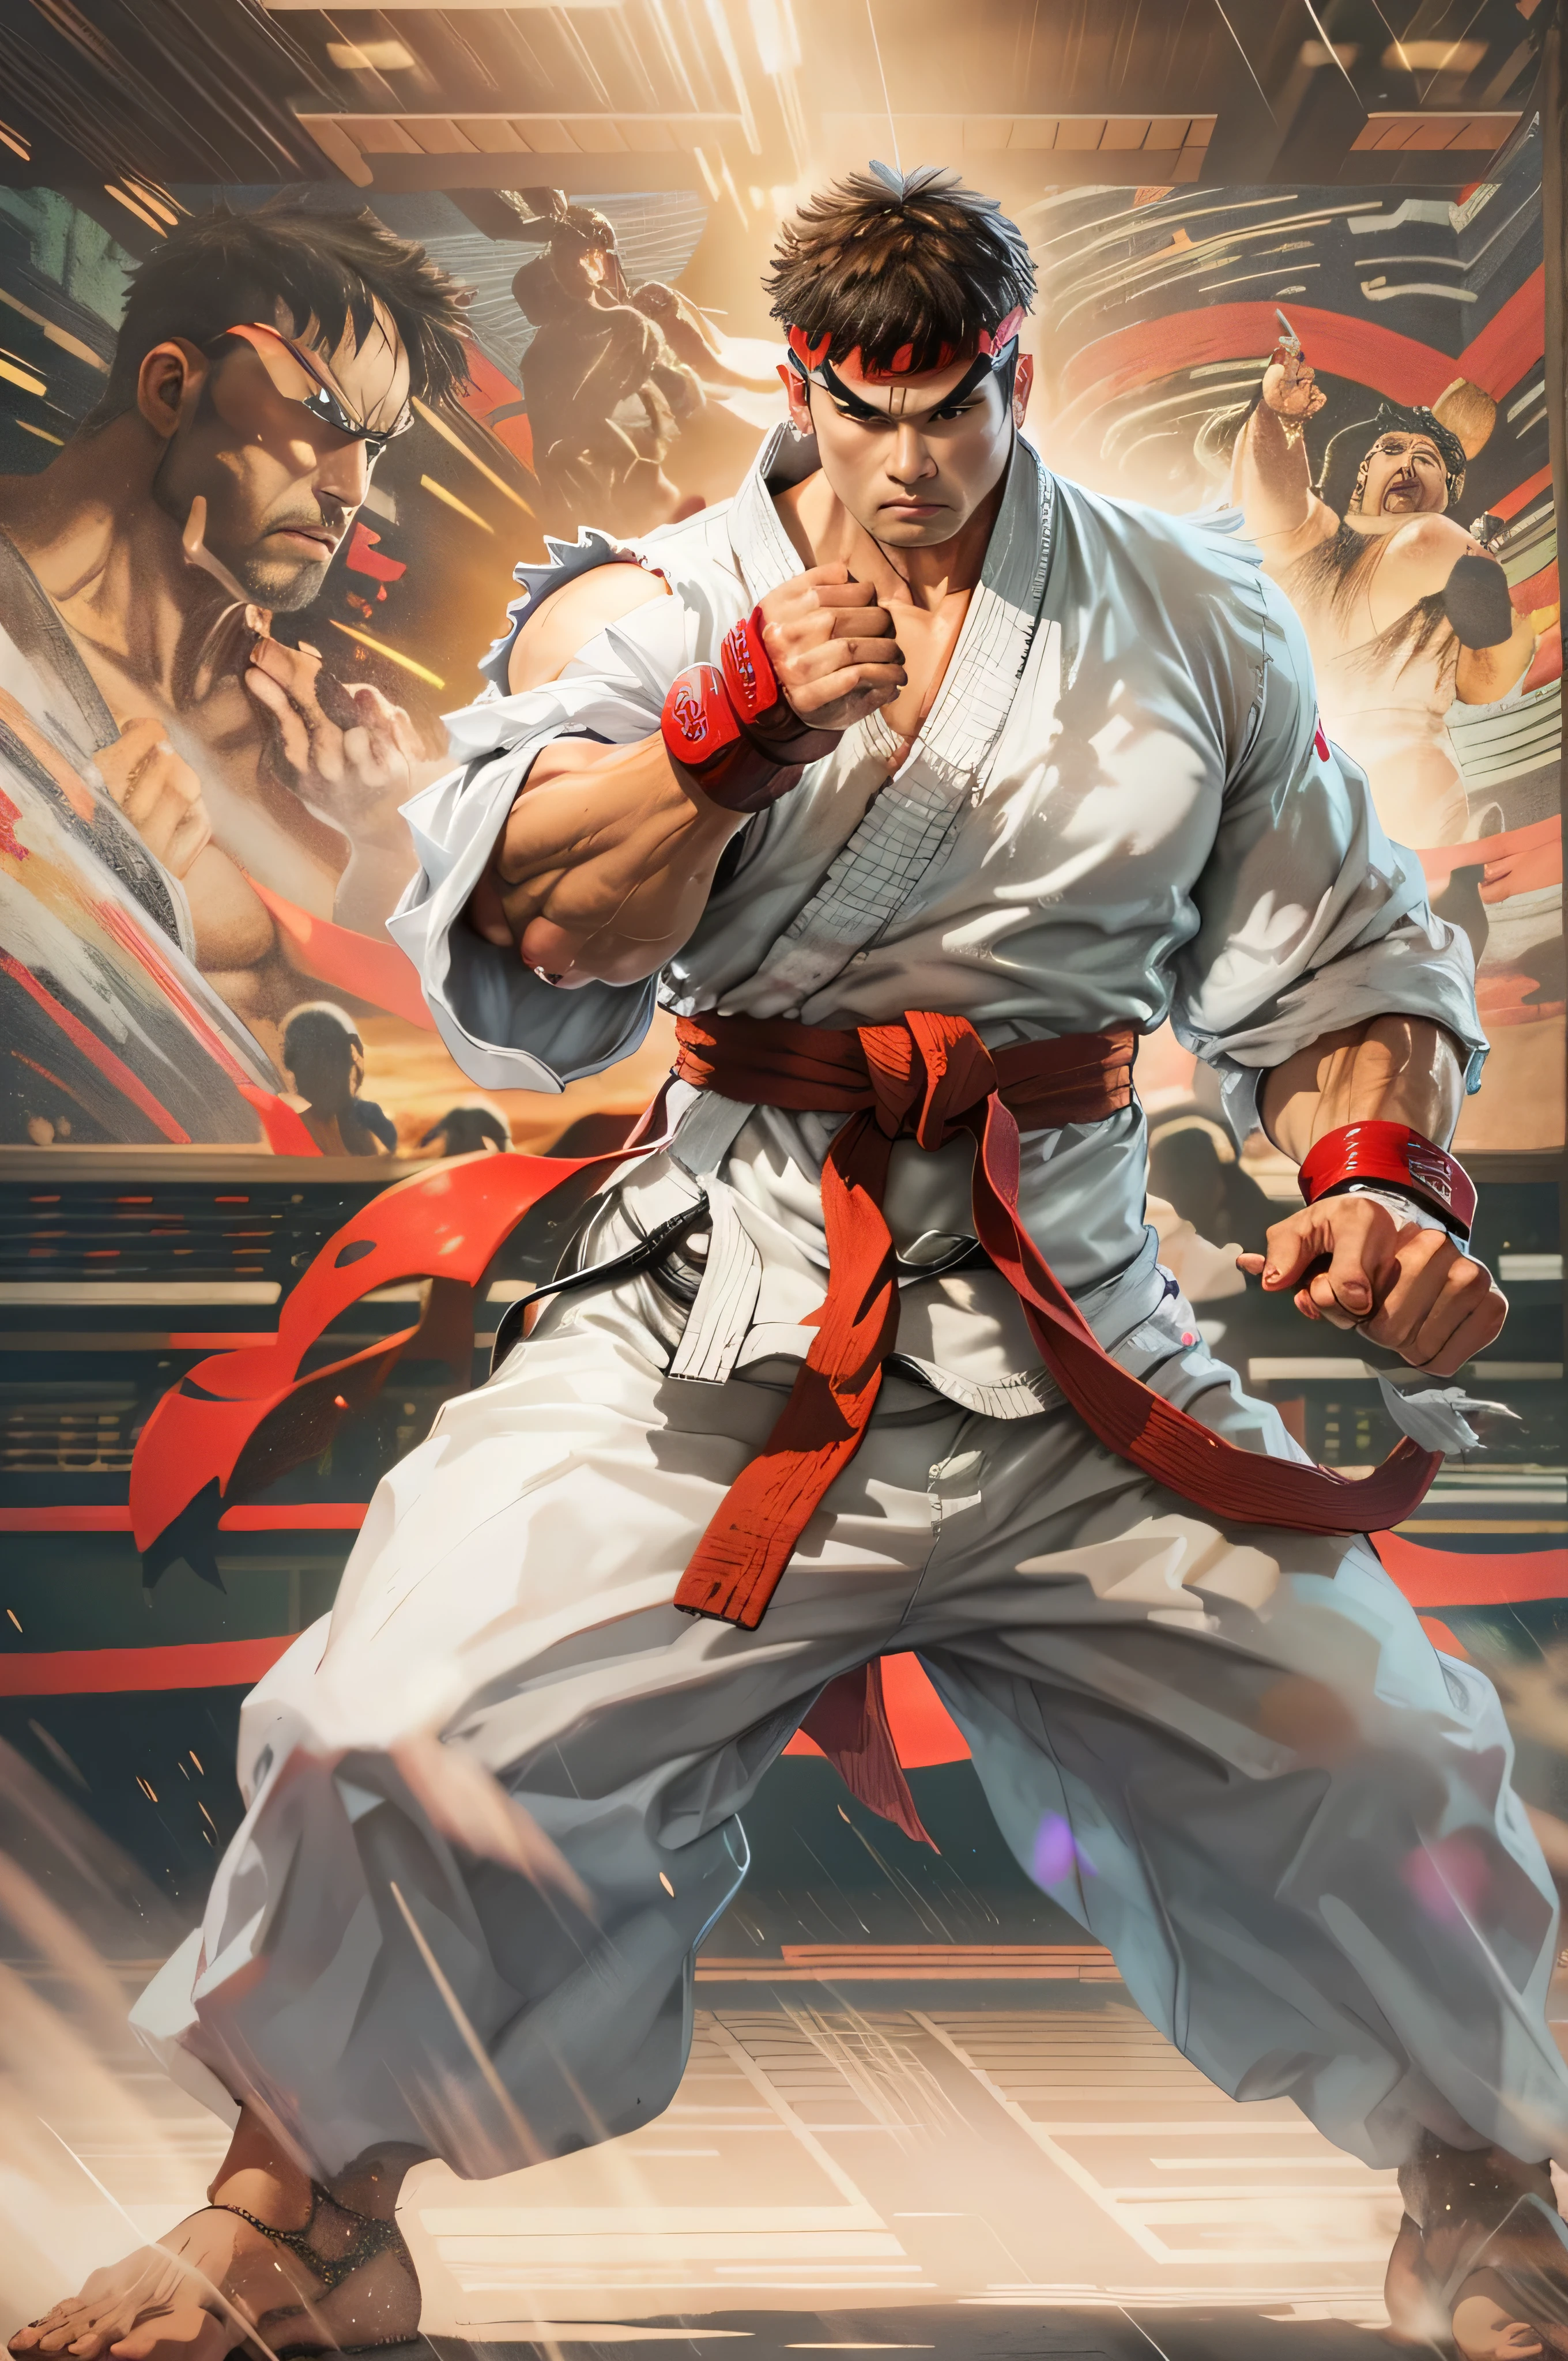 1 Mann Ryu Solo、Kampfspiel Kämpfer、Straßenkämpfer , trägt einen kompletten Karate-Kimono、Fitness-Körperform、Kampfbereite Pose、Kampf-Look, Nahaufnahme,  Karate-Pose, einen Hadoken-Spezialzug machen